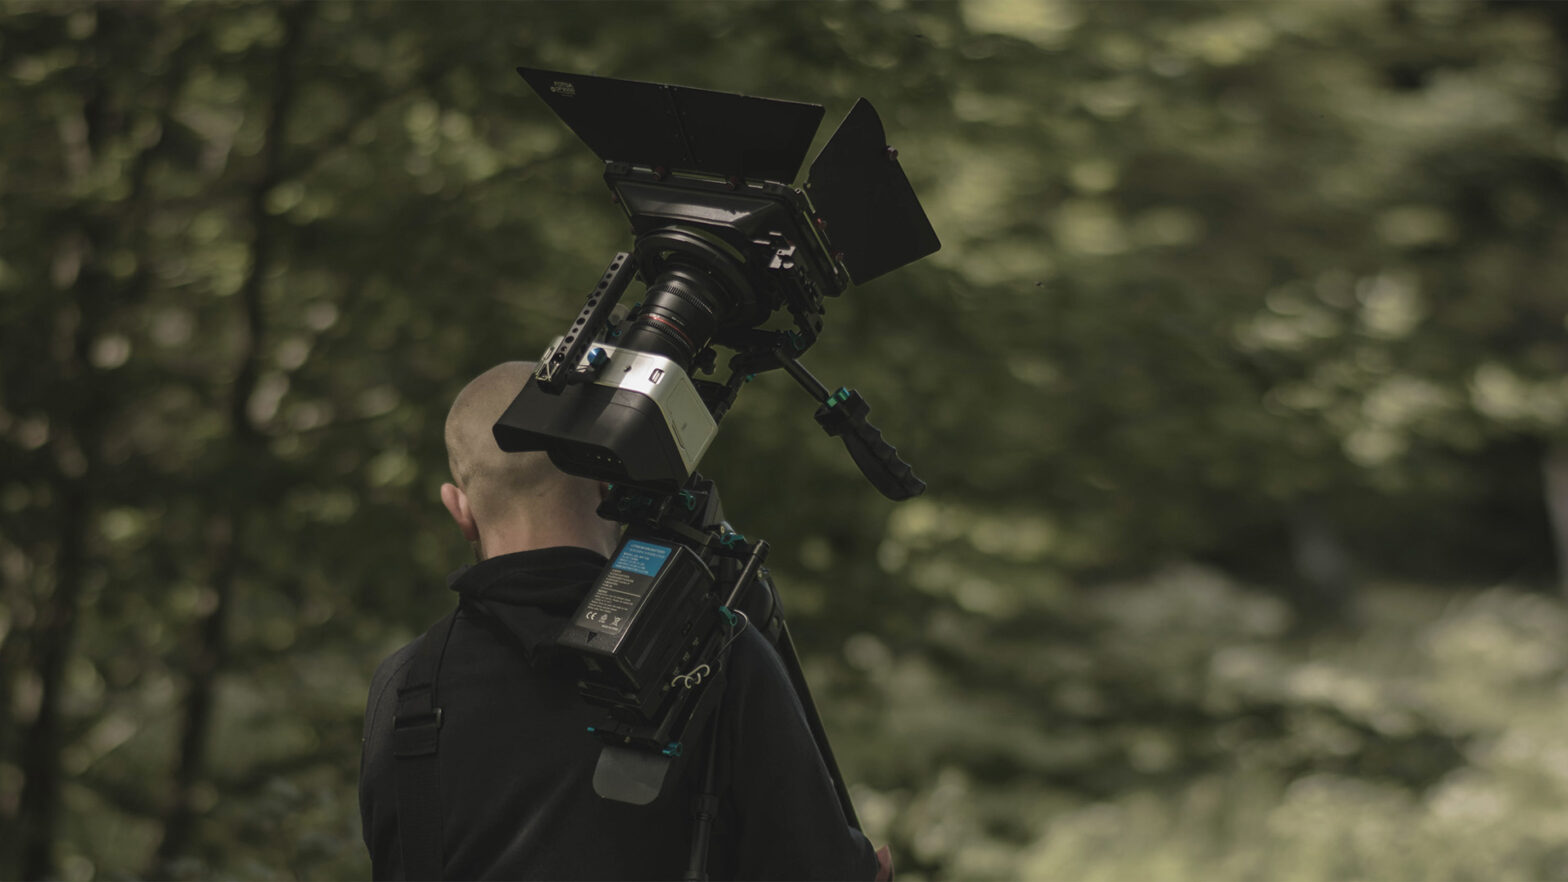 Pokazany od tyłu mężczyzna idzie przez las z kamerą filmową zamocowaną na statywie, który trzyma oparty o ramię.